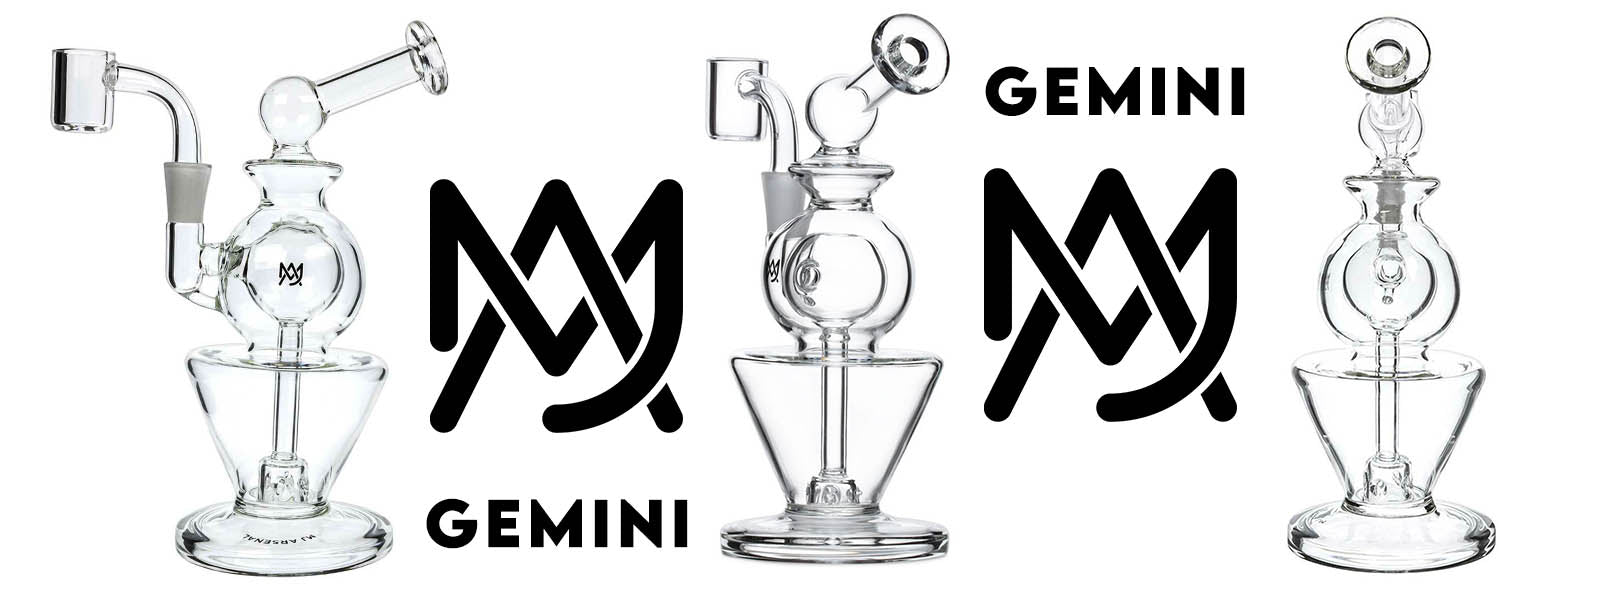 MJ Arsenal Gemini Waterpipe